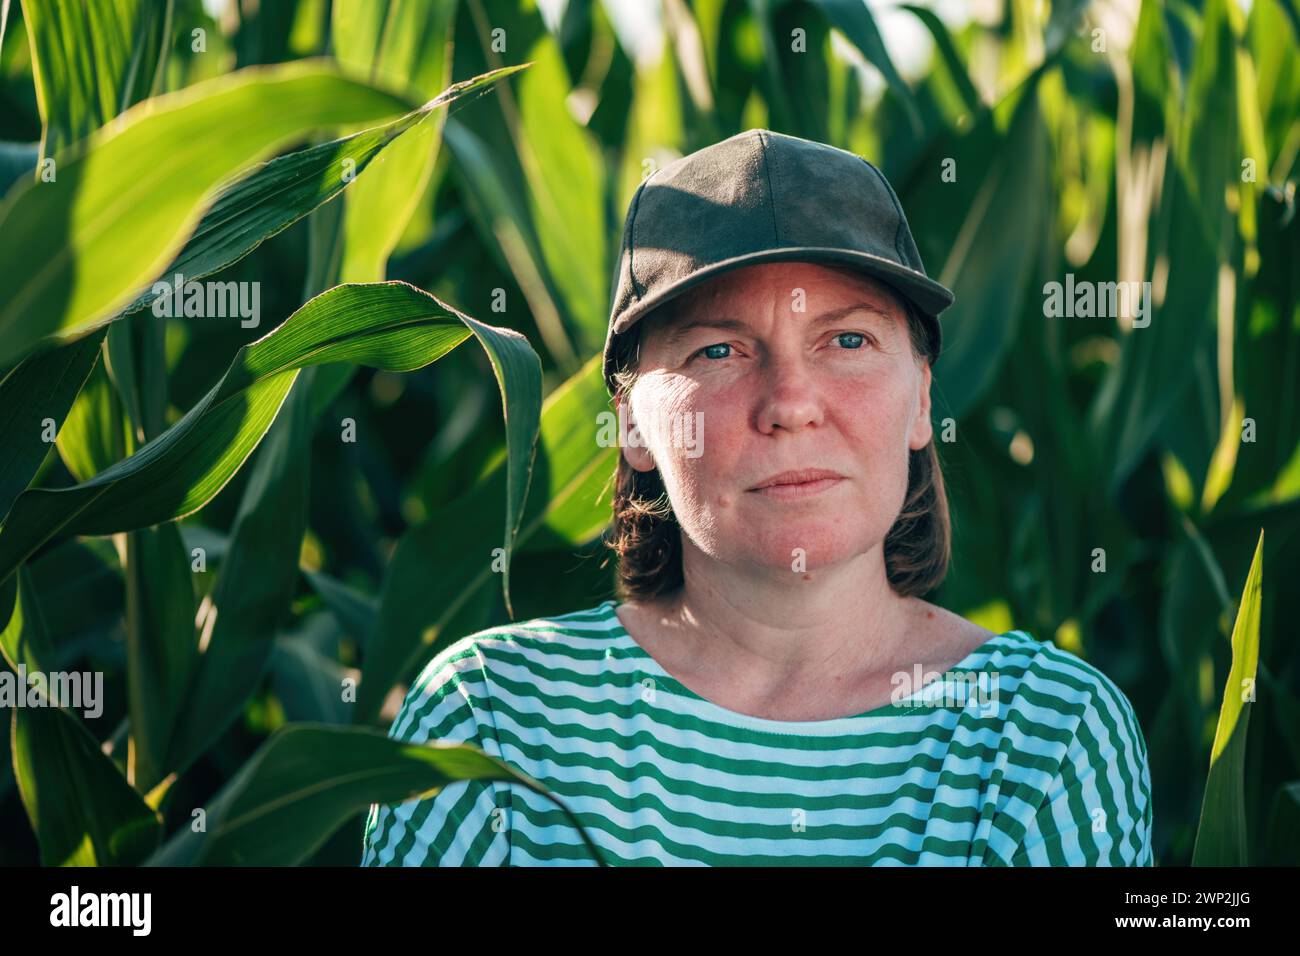 Landwirtin und Agrarwissenschaftlerin, die sich auf dem grünen Maisfeld ausgibt und in die Ferne blickt, während sie über einen selektiven Fokus nachdenkt Stockfoto